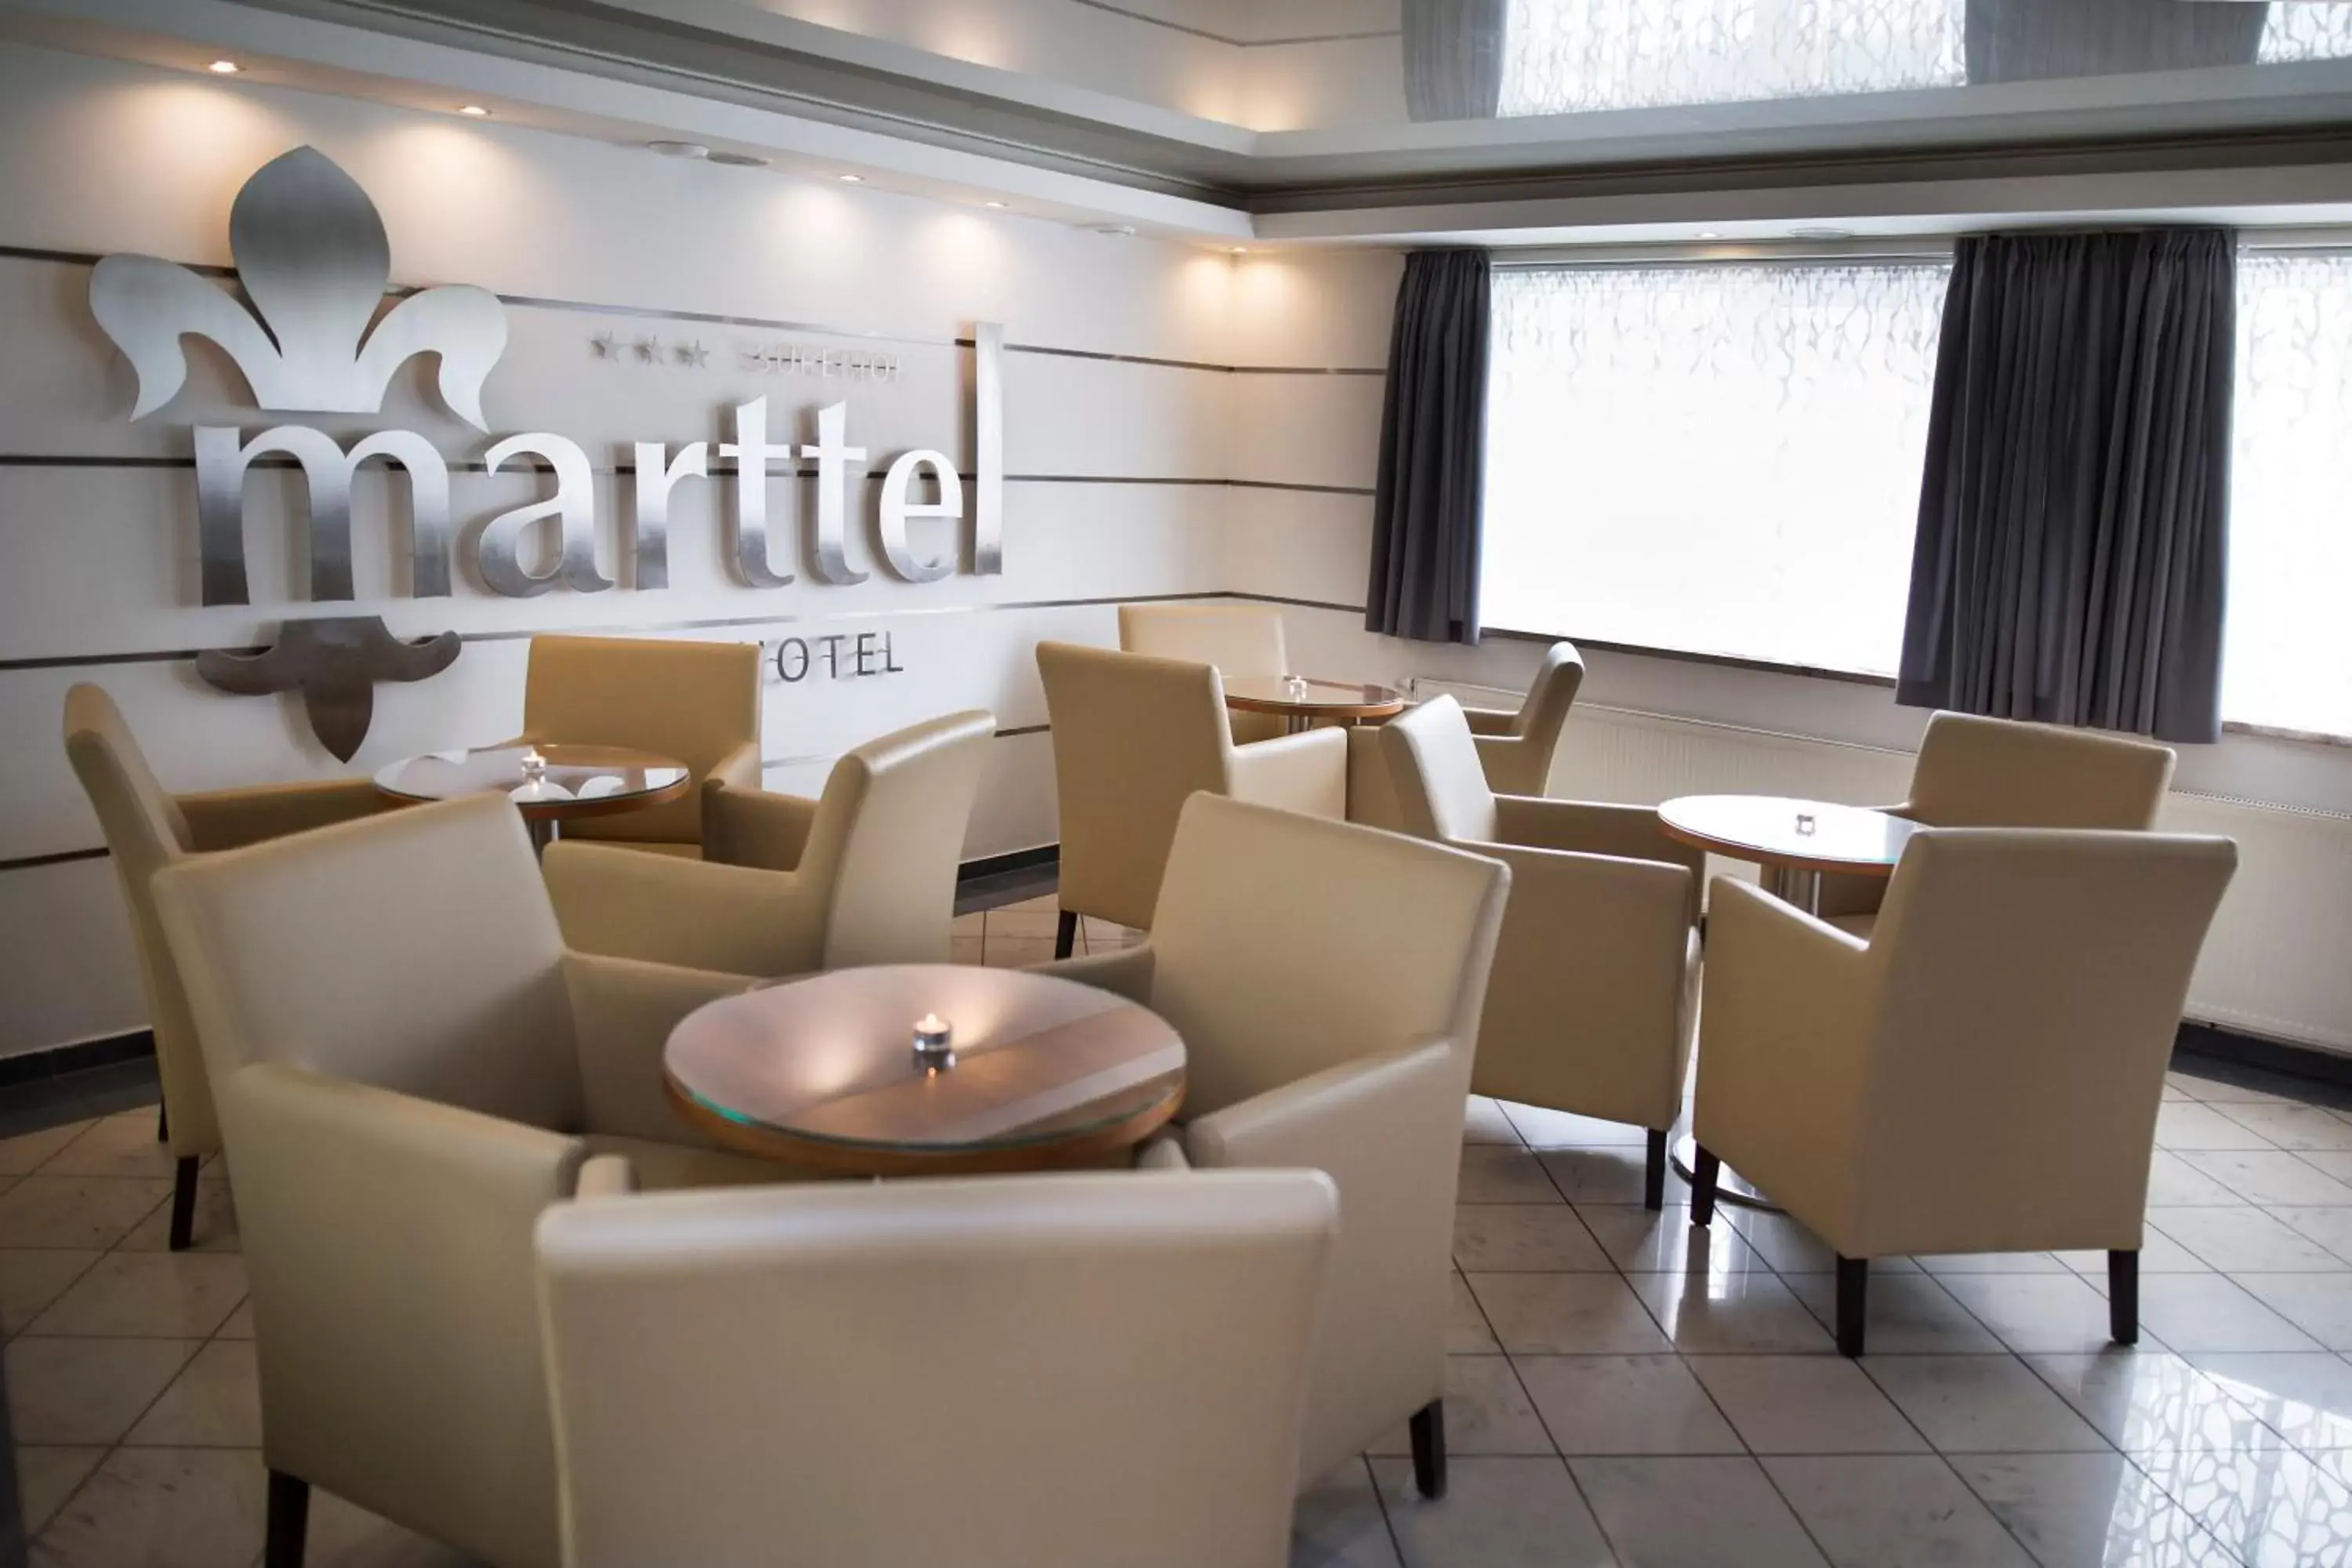 Lobby or reception in Hotel Marttel